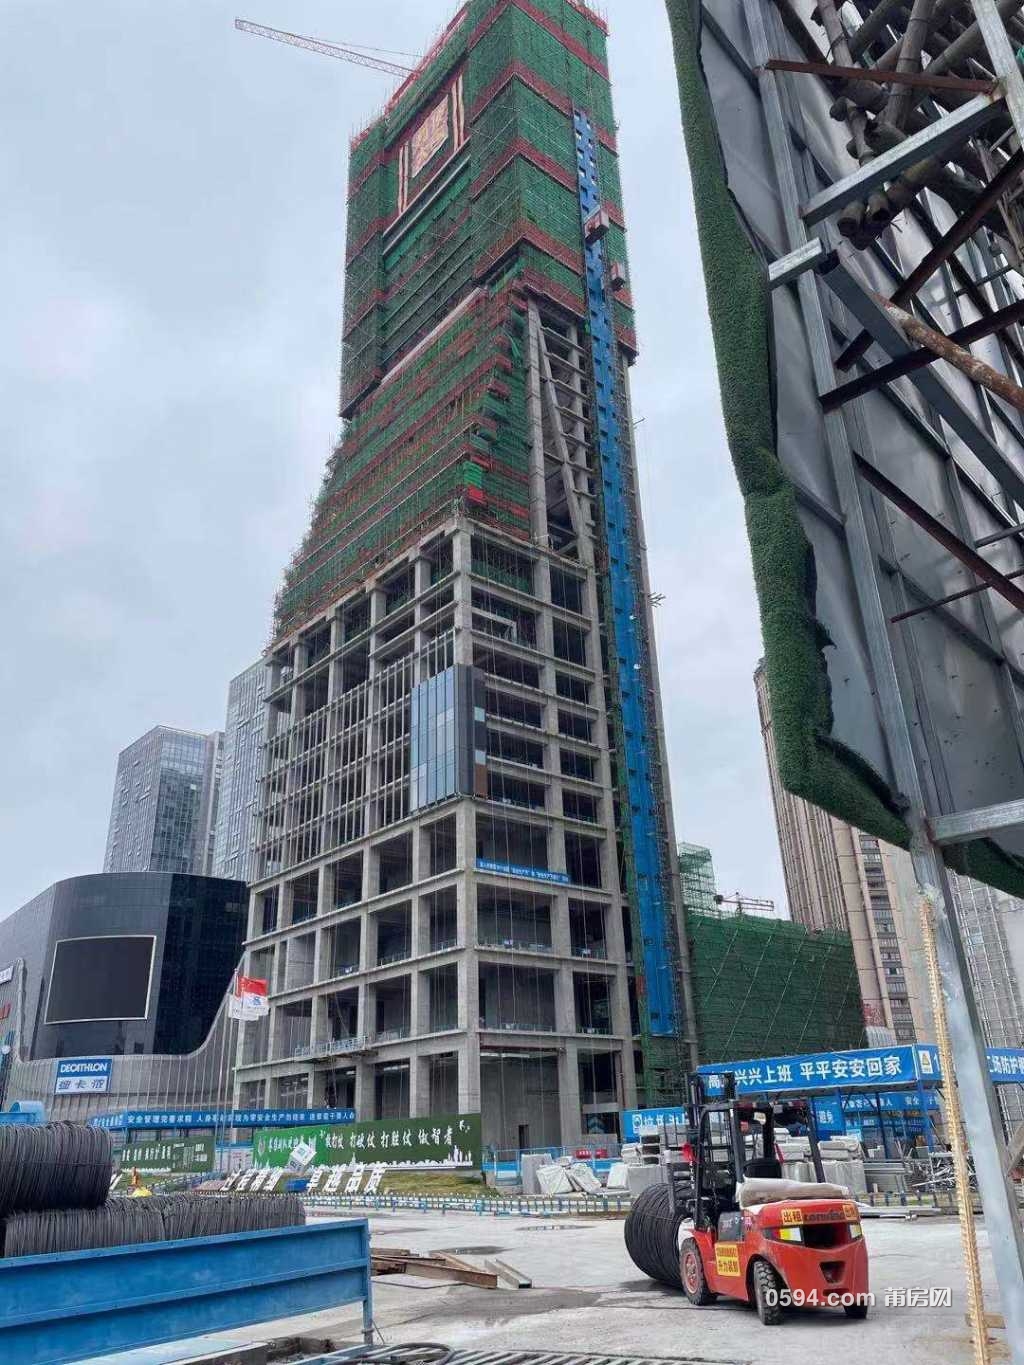 莆田市第一高楼超两百米喜来登大酒店快封顶了